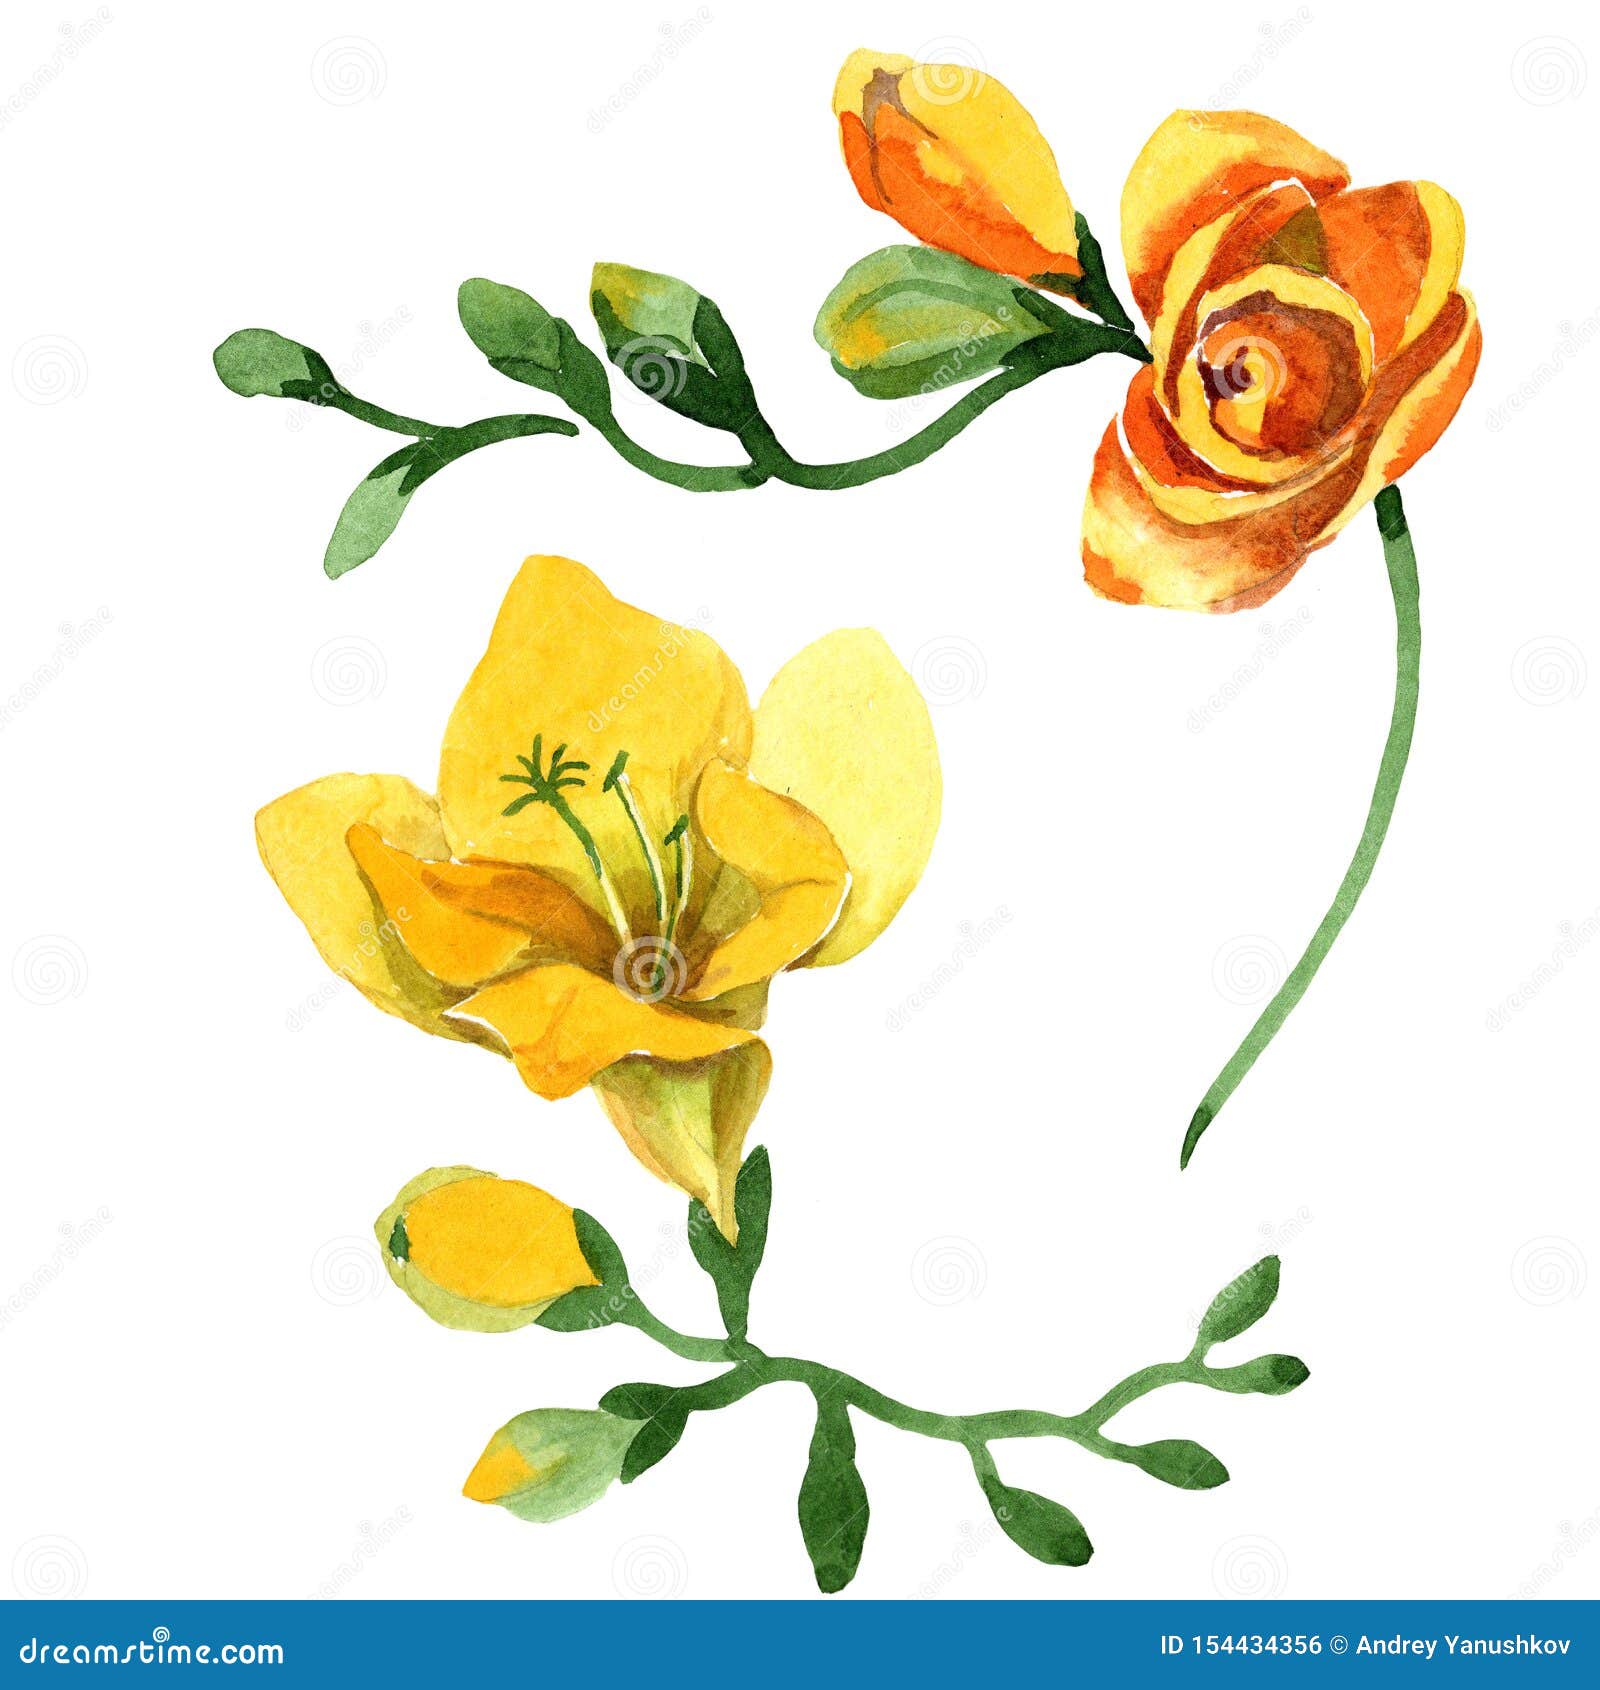 Цветки желтого freesia флористические ботанические Набор иллюстрации ackground b акварели Изолированный элемент иллюстрации frees